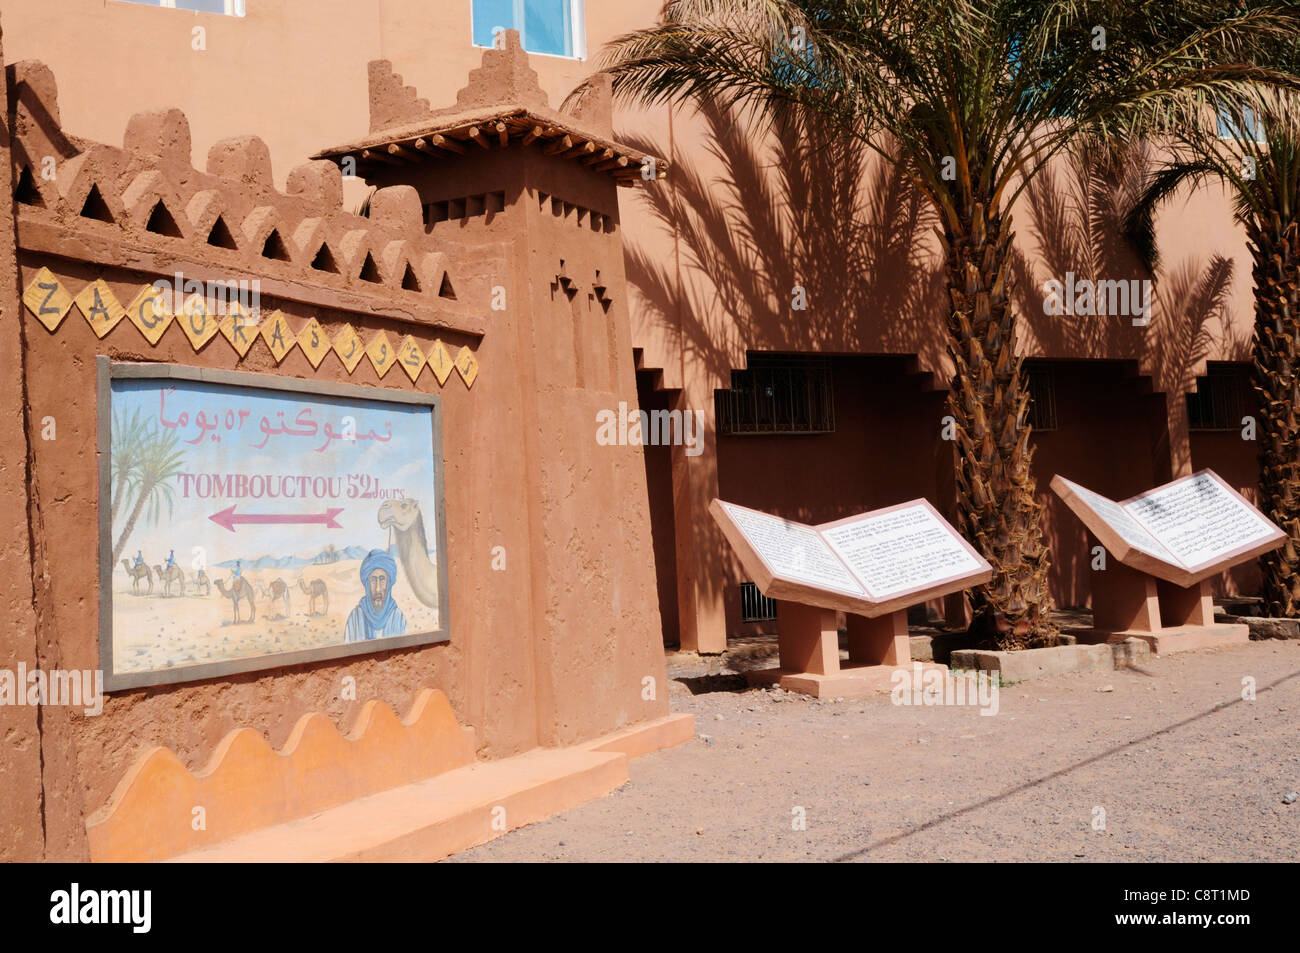 Tombouctou 52 Jours segno, Zagora, Valle di Draa Regione, Marocco Foto Stock